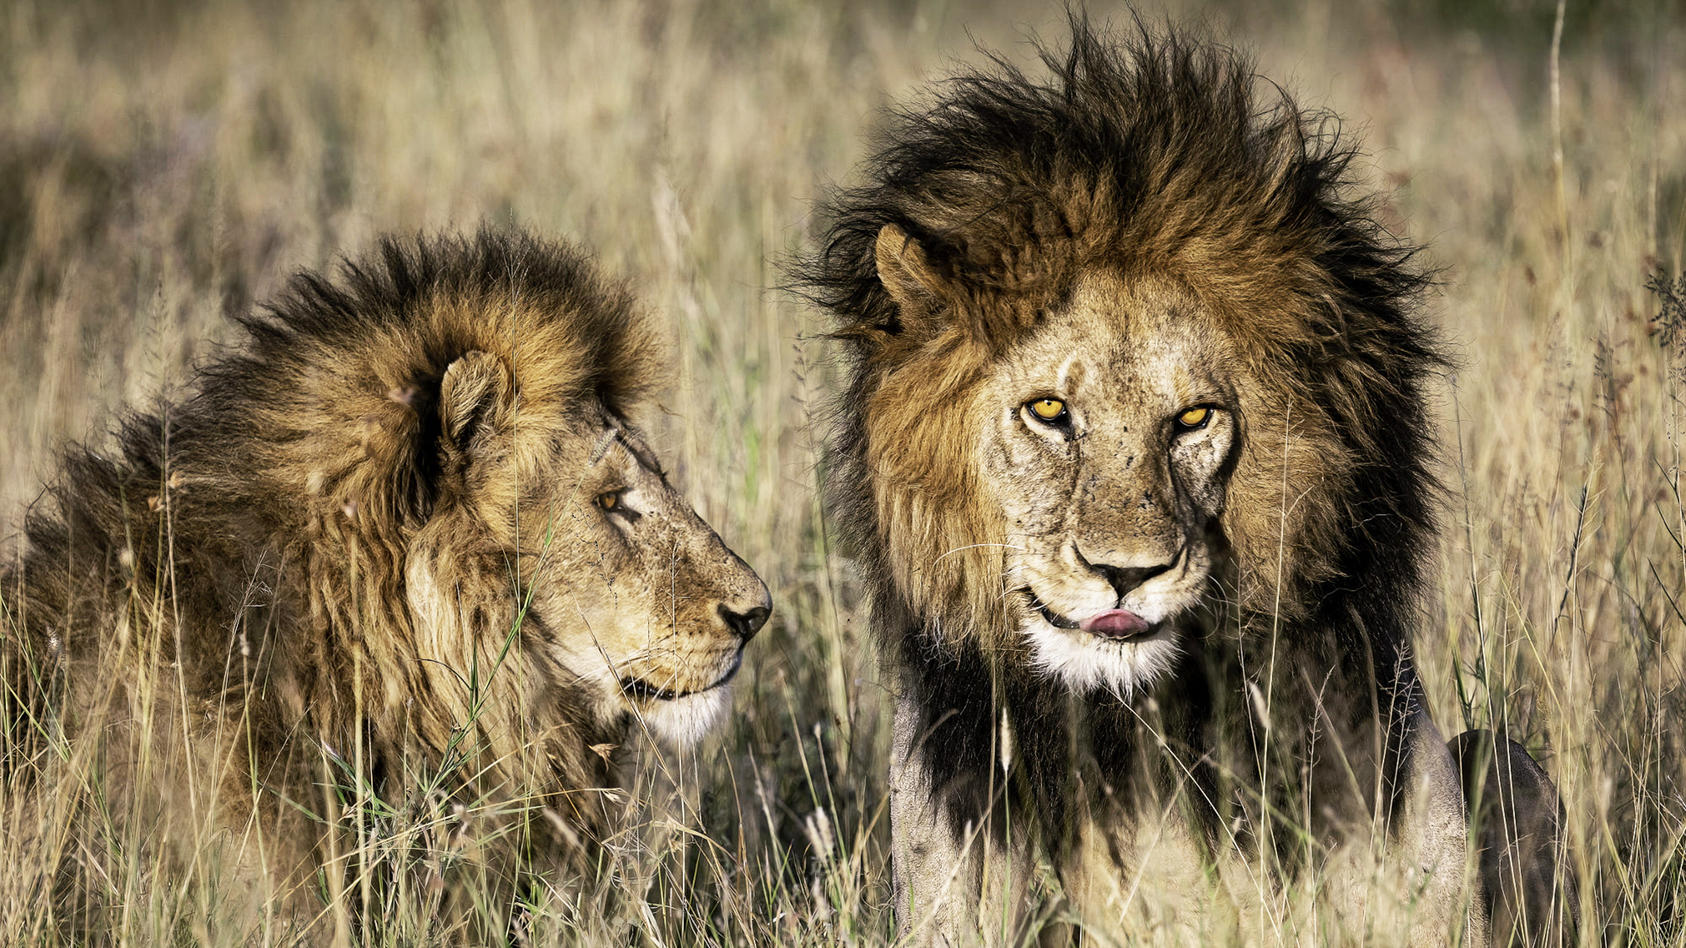 Bob Junior und sein Bruder Tryggve herrschten jahrelang gemeinsam über das "Serengeti-Reich".